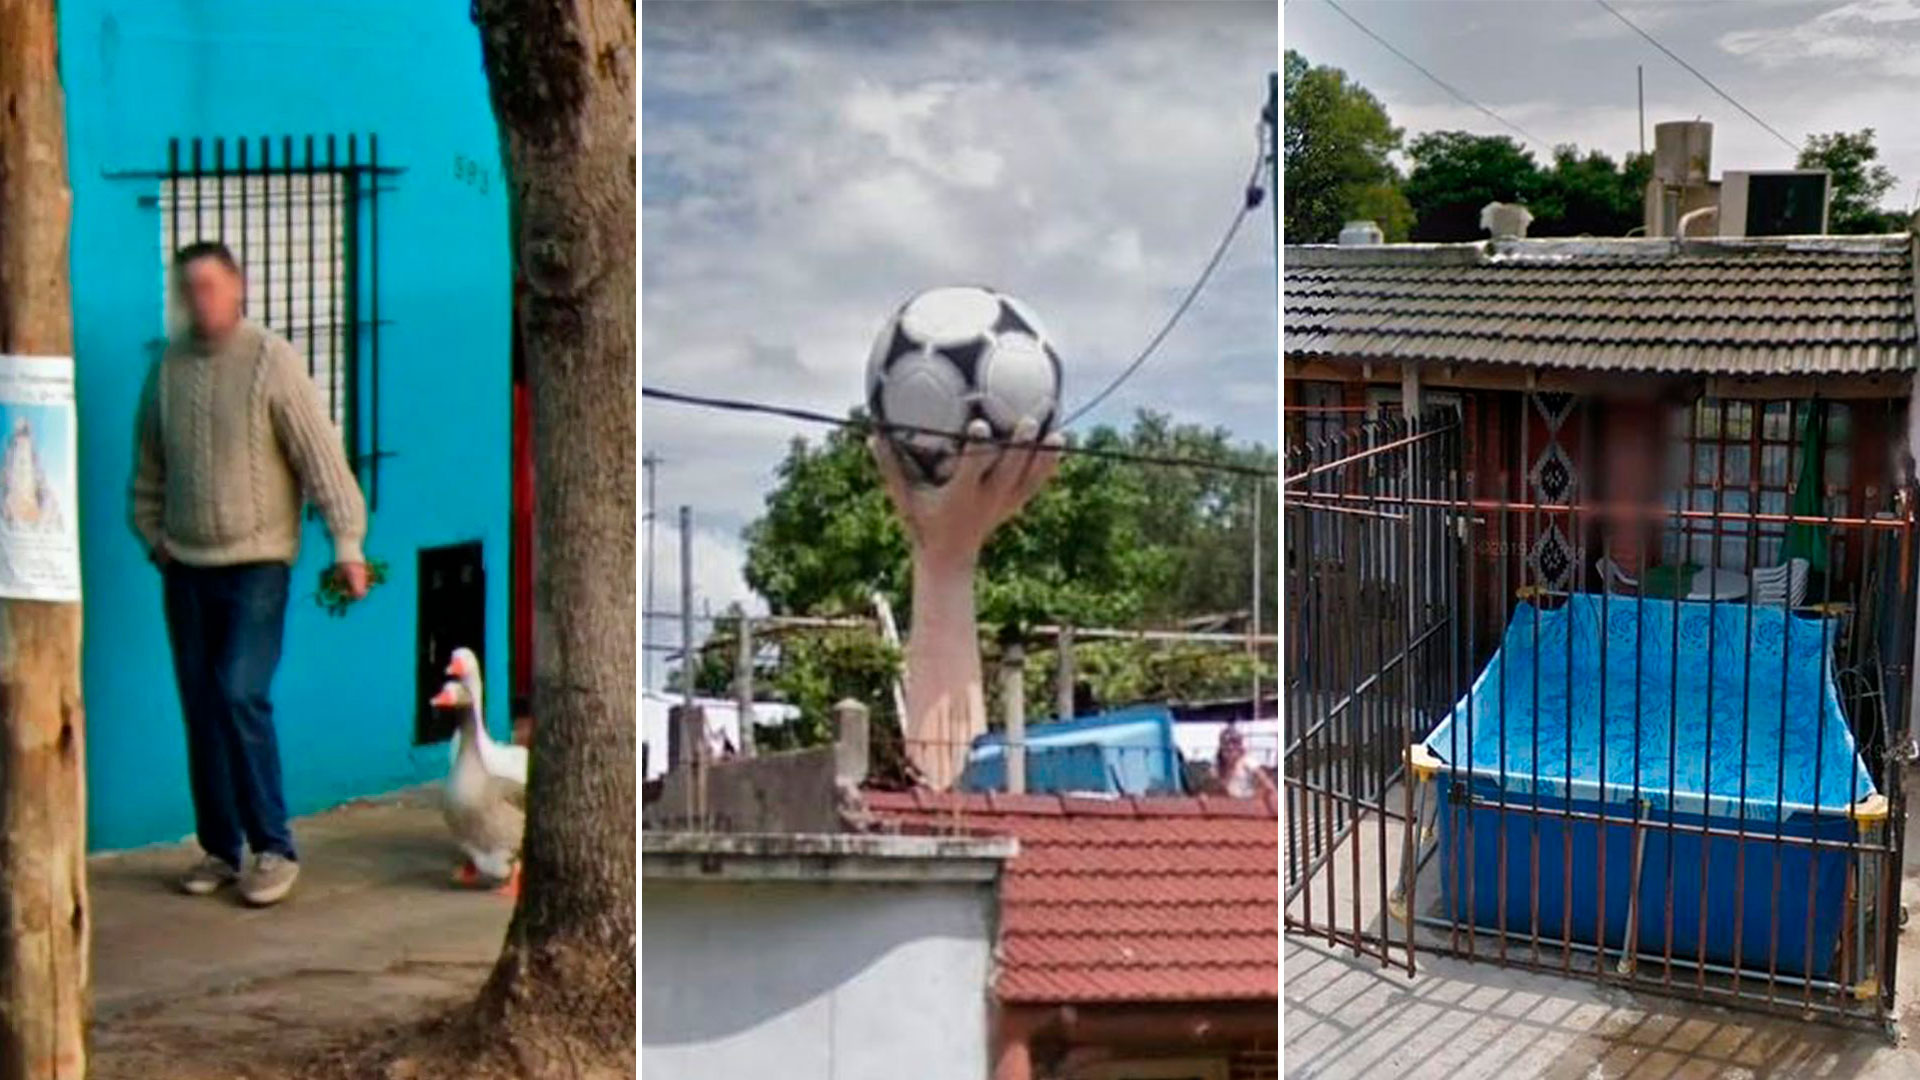 Situaciones bizarras, construcciones excéntricas y dueños que usurpan las veredas por falta de espacio, algunas de las postales más insólitas del Conurbano captadas por Google Street View